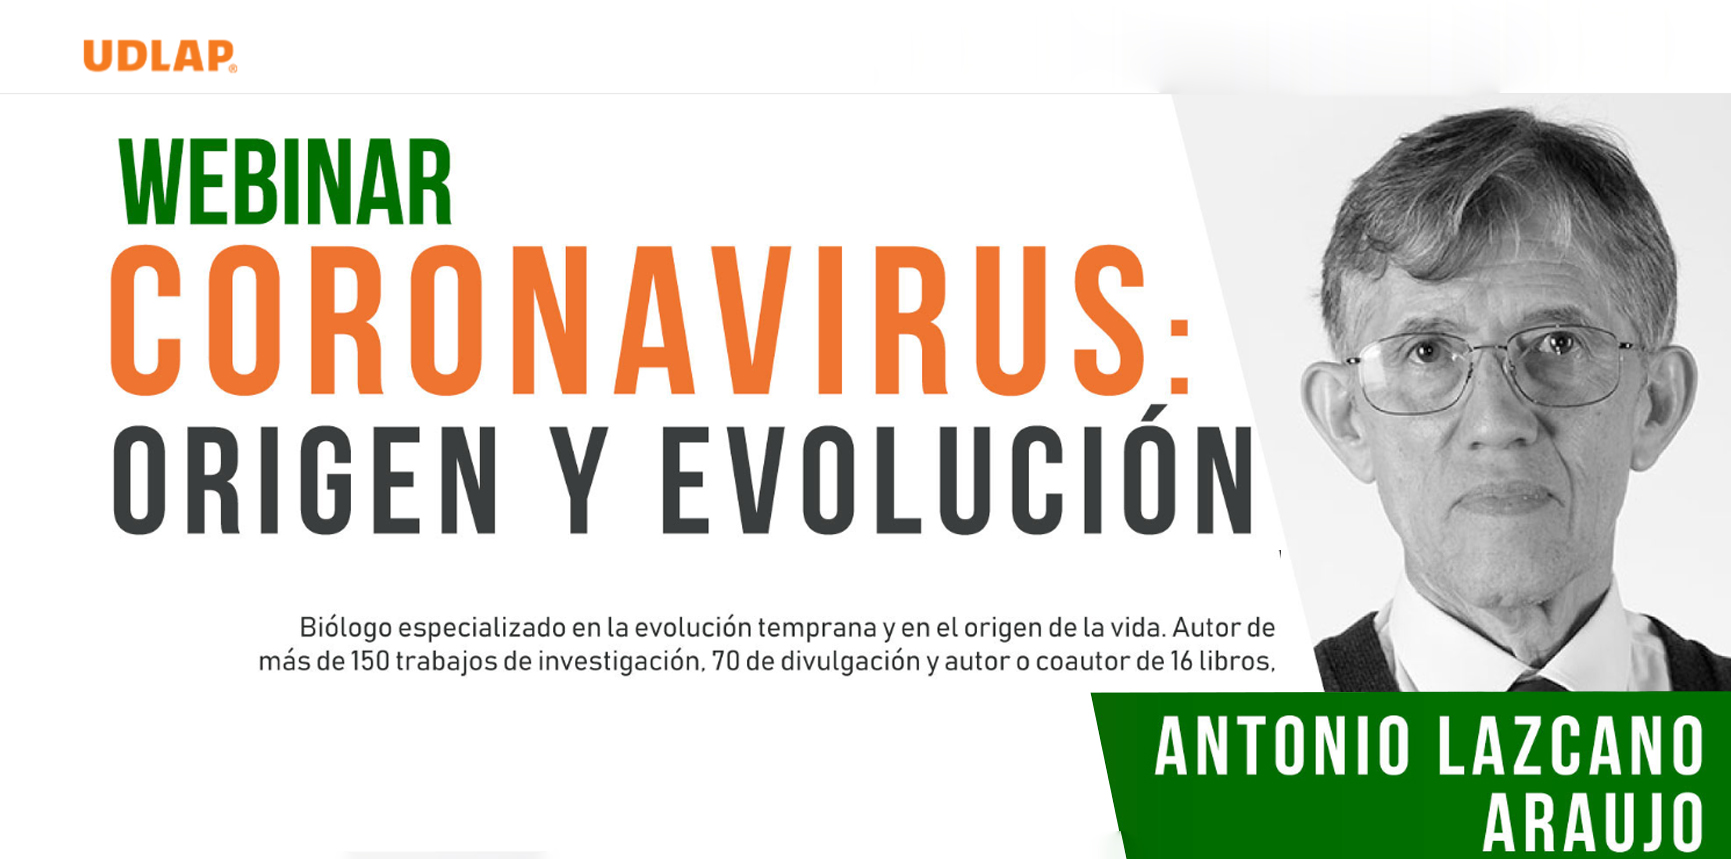 La UDLAP recibió a reconocido científico mexicano para analizar el origen y evolución del coronavirus